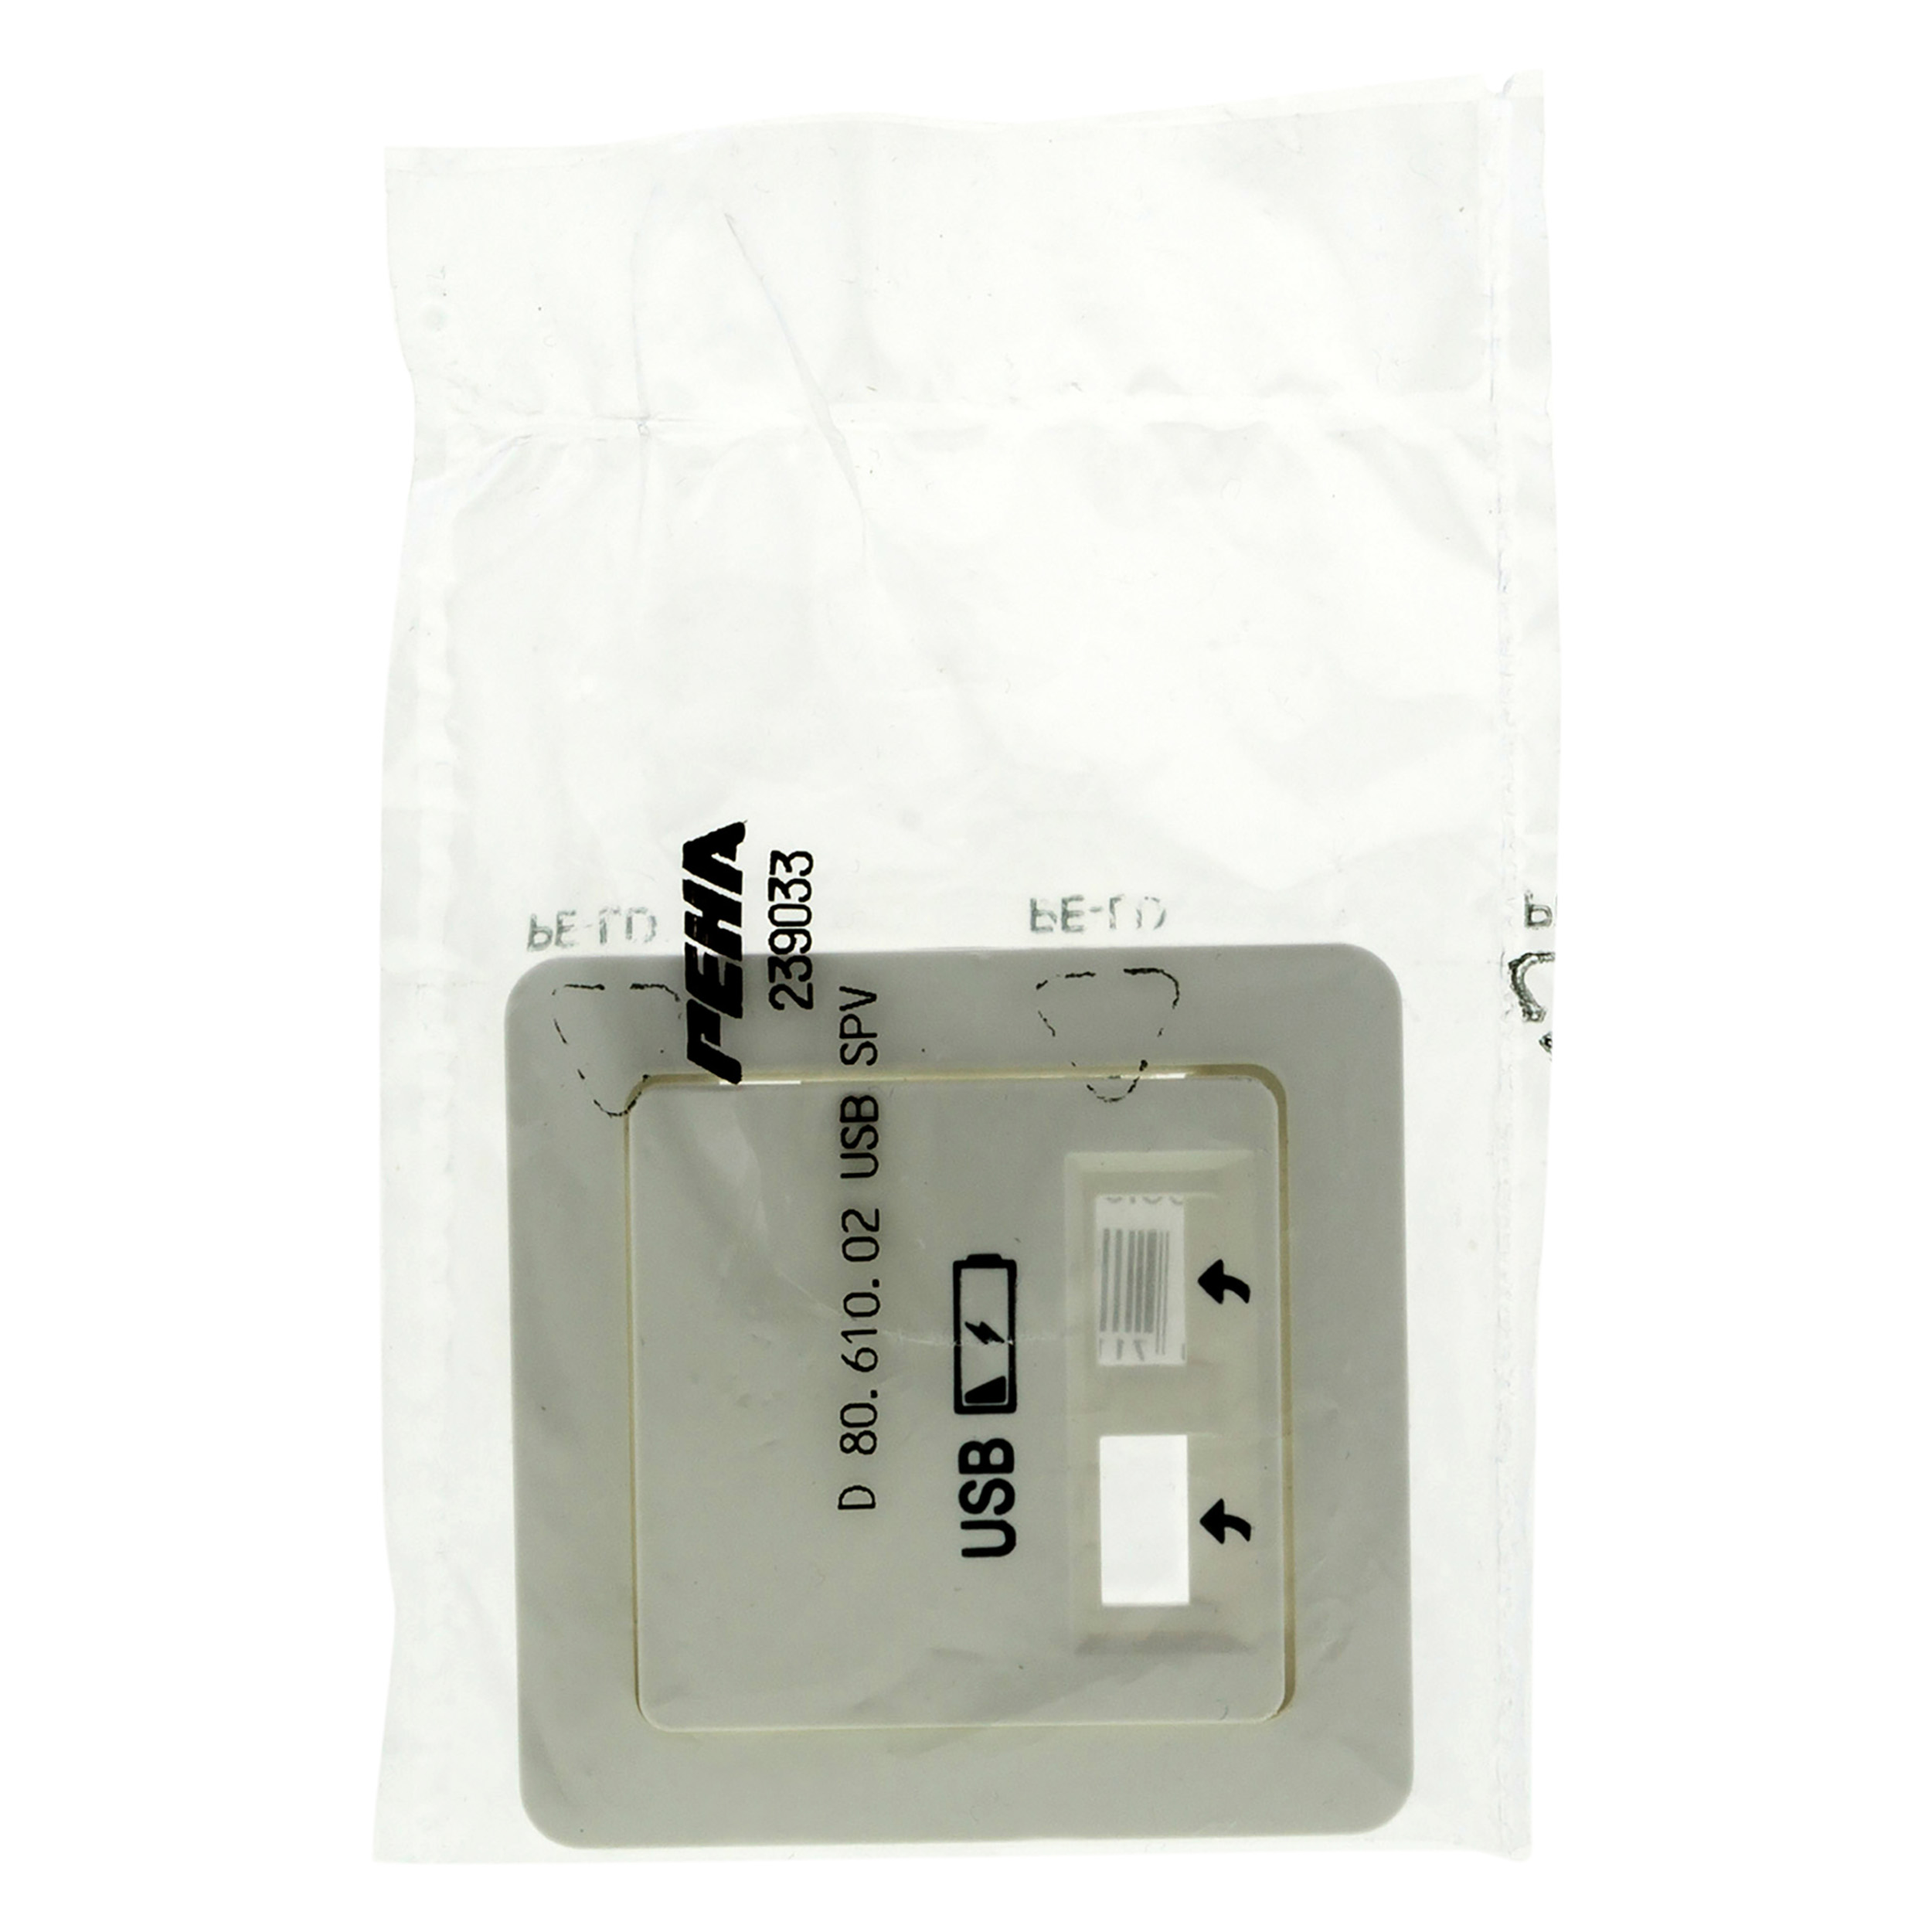 6601143 - Centraalplaat USB - Peha - Inbouw - Schakelmateriaal Elektra - Webshop | SHI